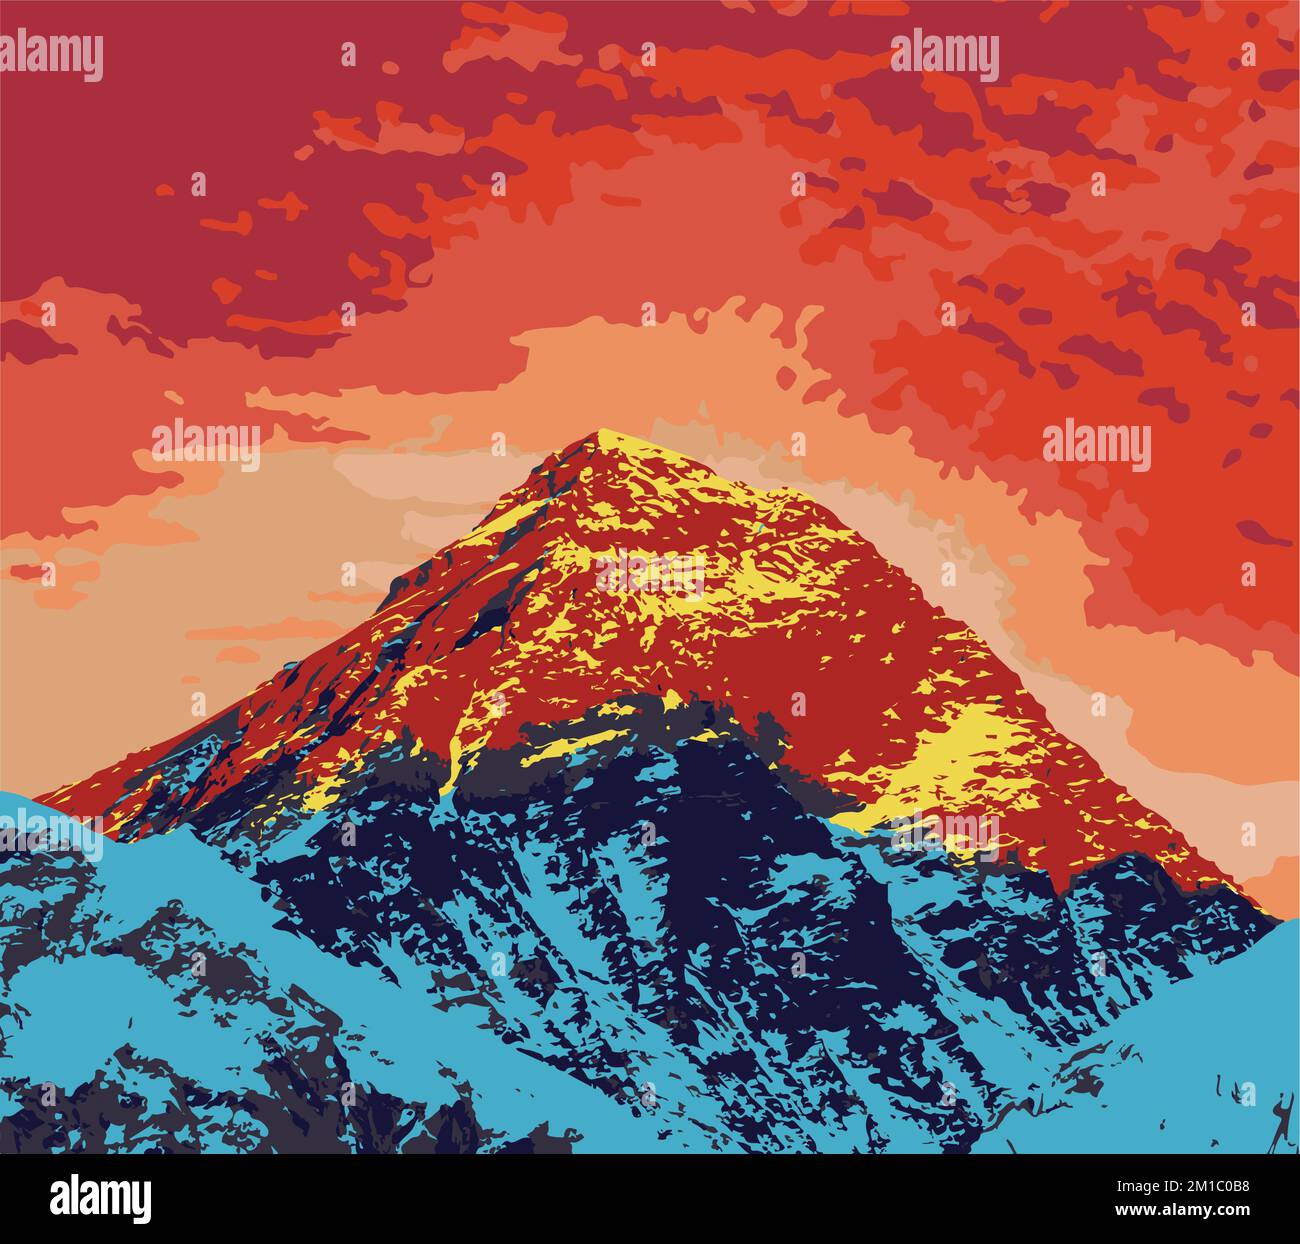 Mont Everest vu de Kala Patthar coucher de soleil vue, vecteur illustration logo, Mt Everest 8 848 m, Népal Himalaya montagne Illustration de Vecteur